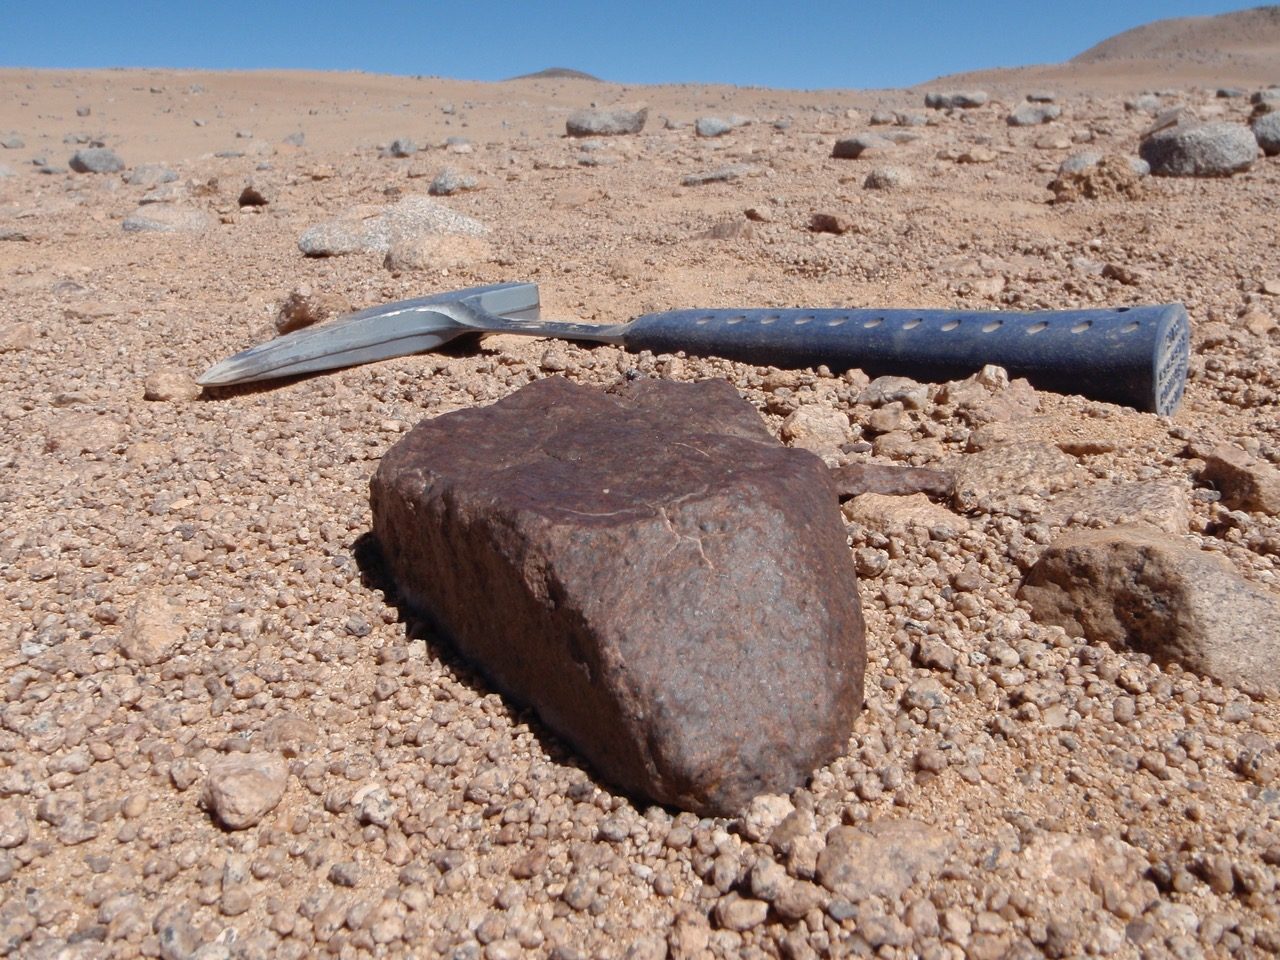 Large meteorite found in the Atacama Desert